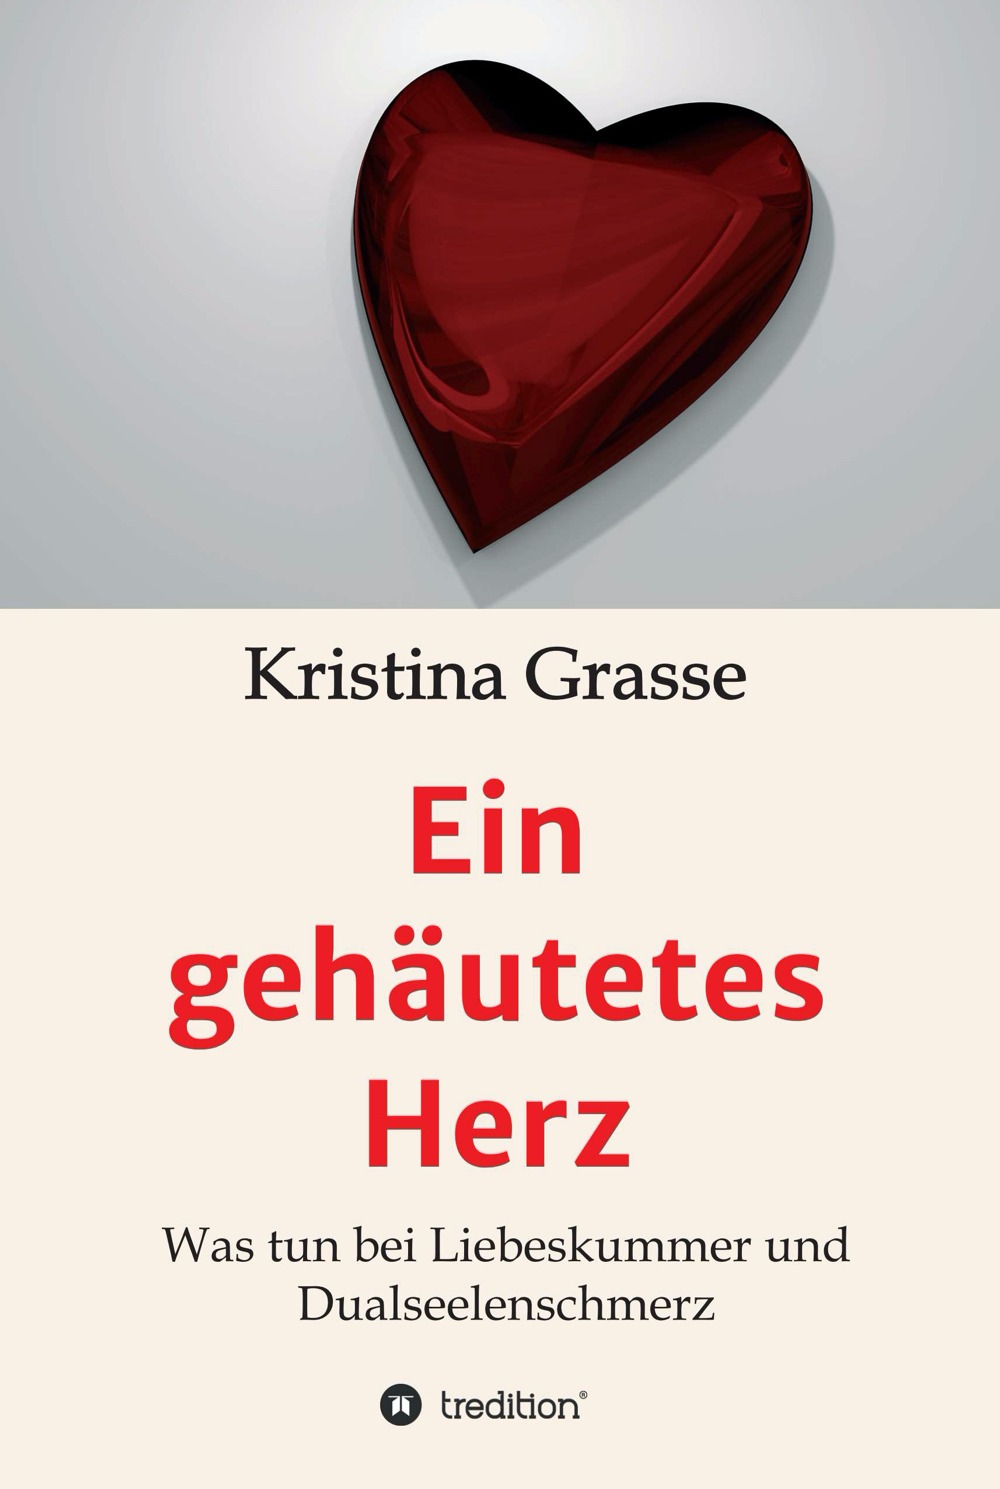 Kristina Grasse Autorin